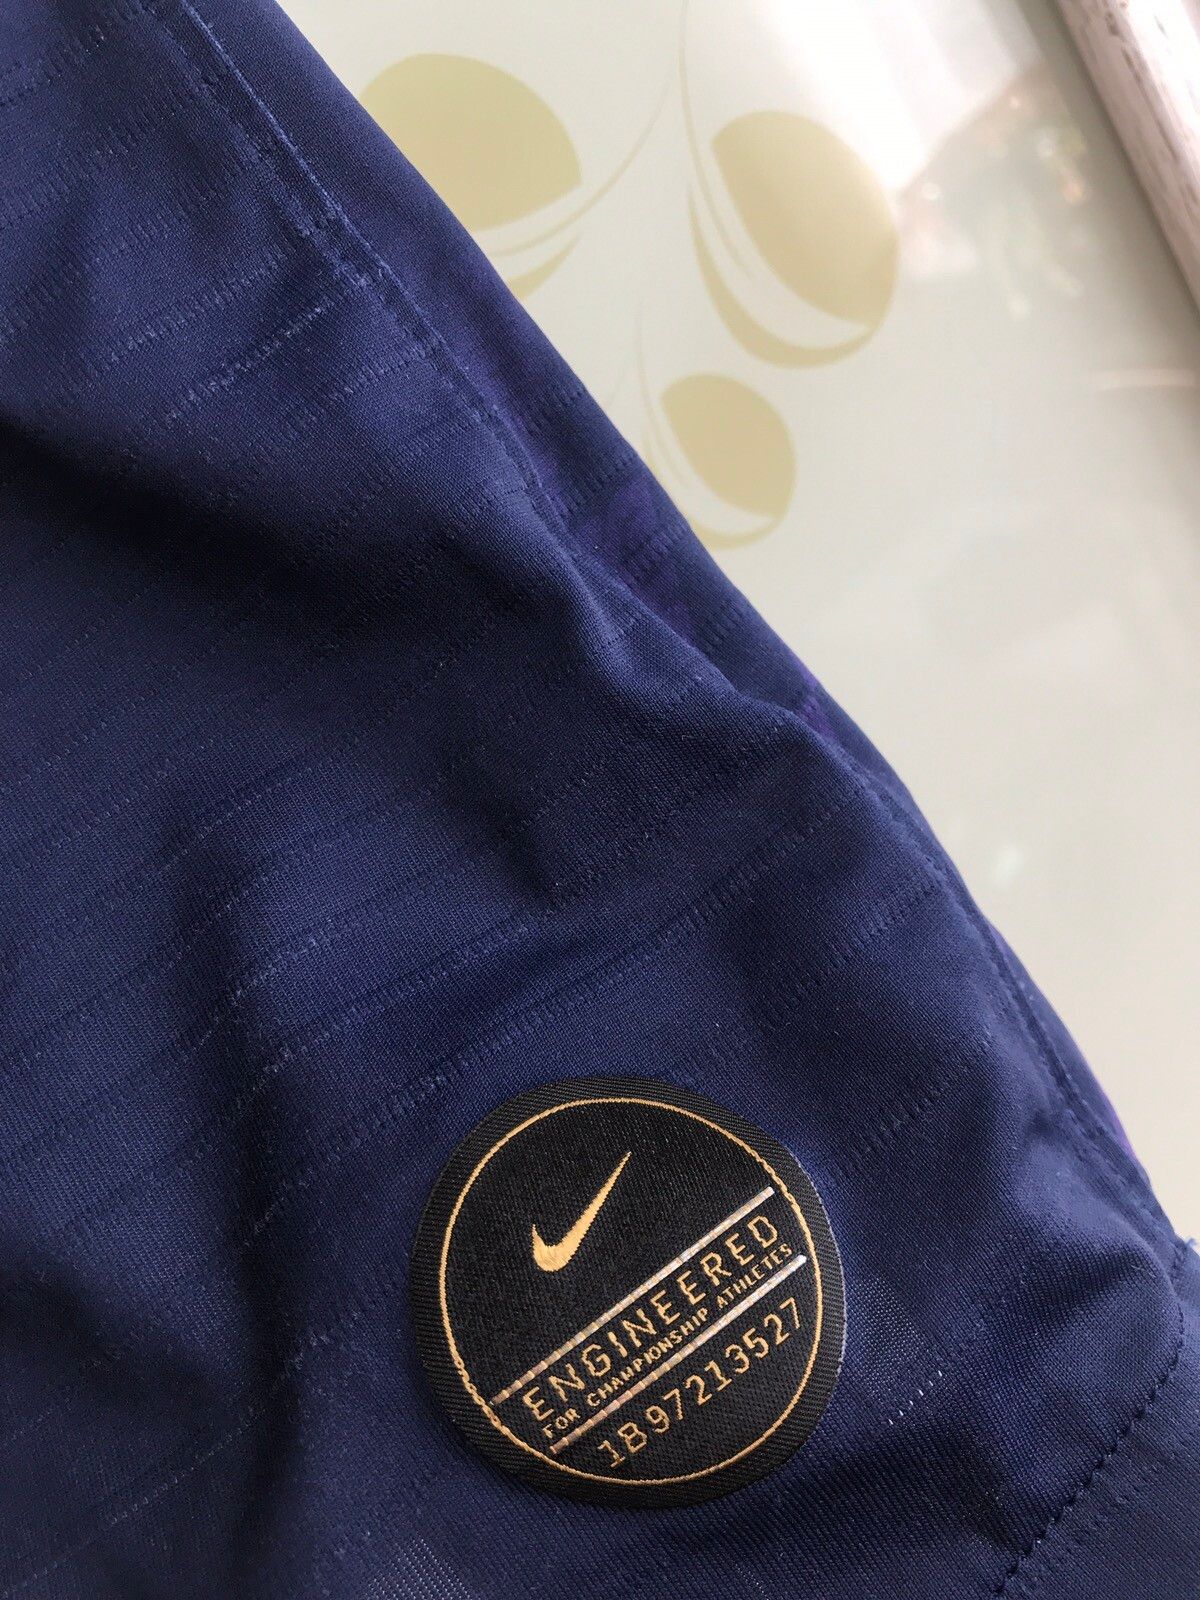 Nike Tottenham 2019-2020 Eriksen Nike Vaporknit Soccer Jersey Kit Size US L / EU 52-54 / 3 - 14 Thumbnail